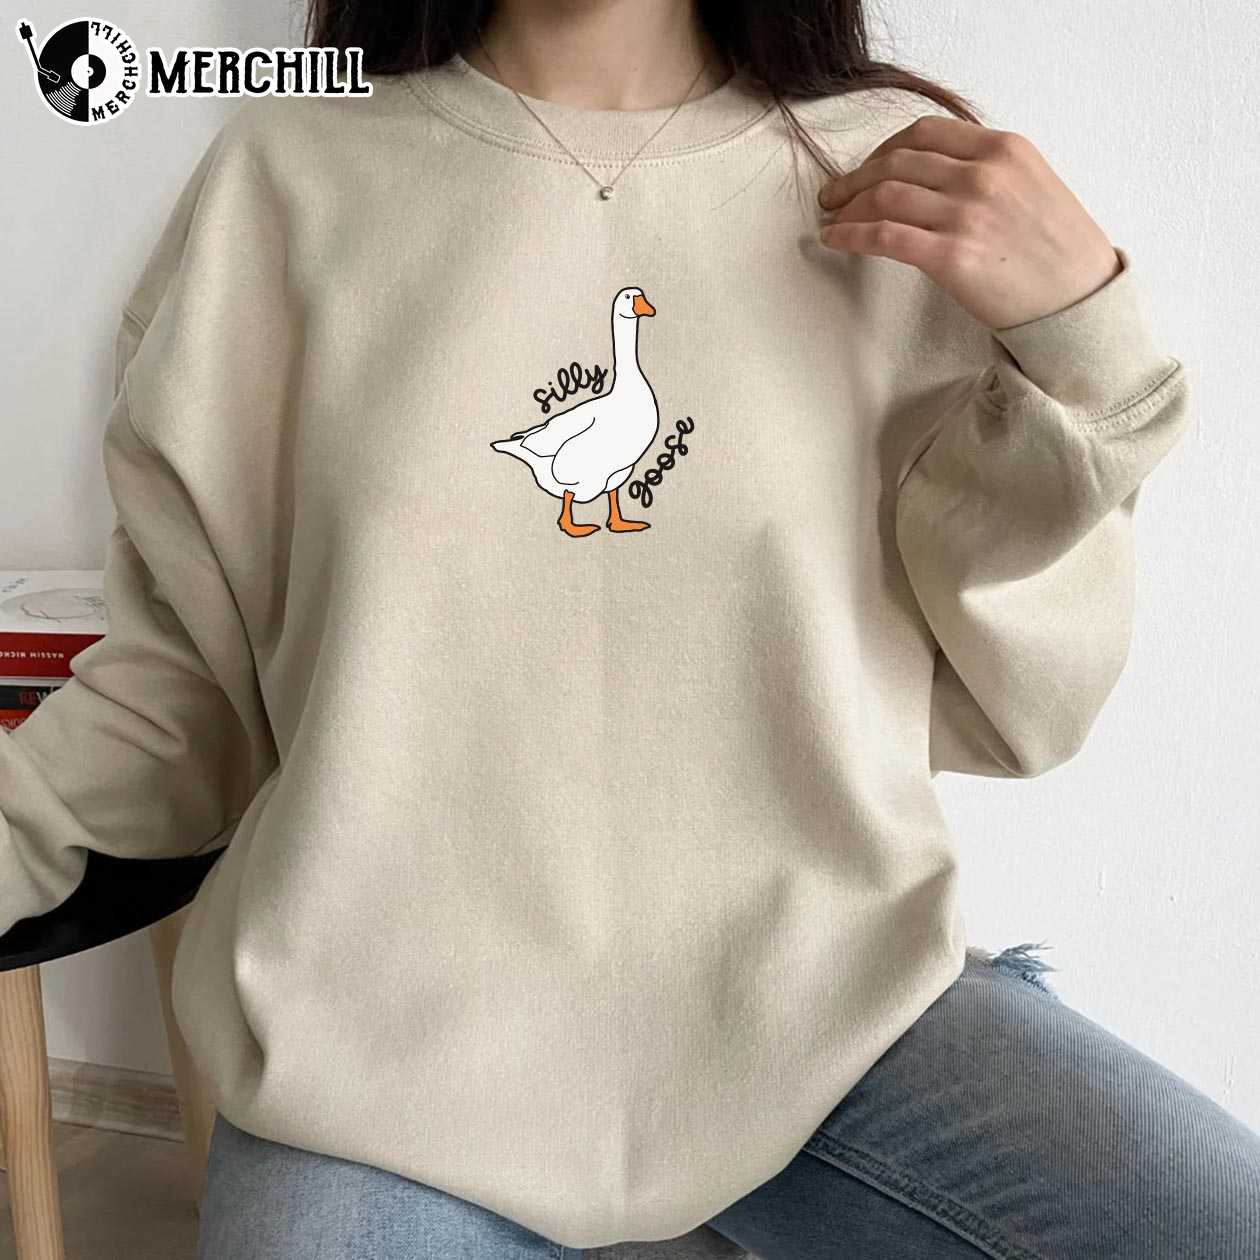 Customon Human Made Duck Men's T-Shirt White / S